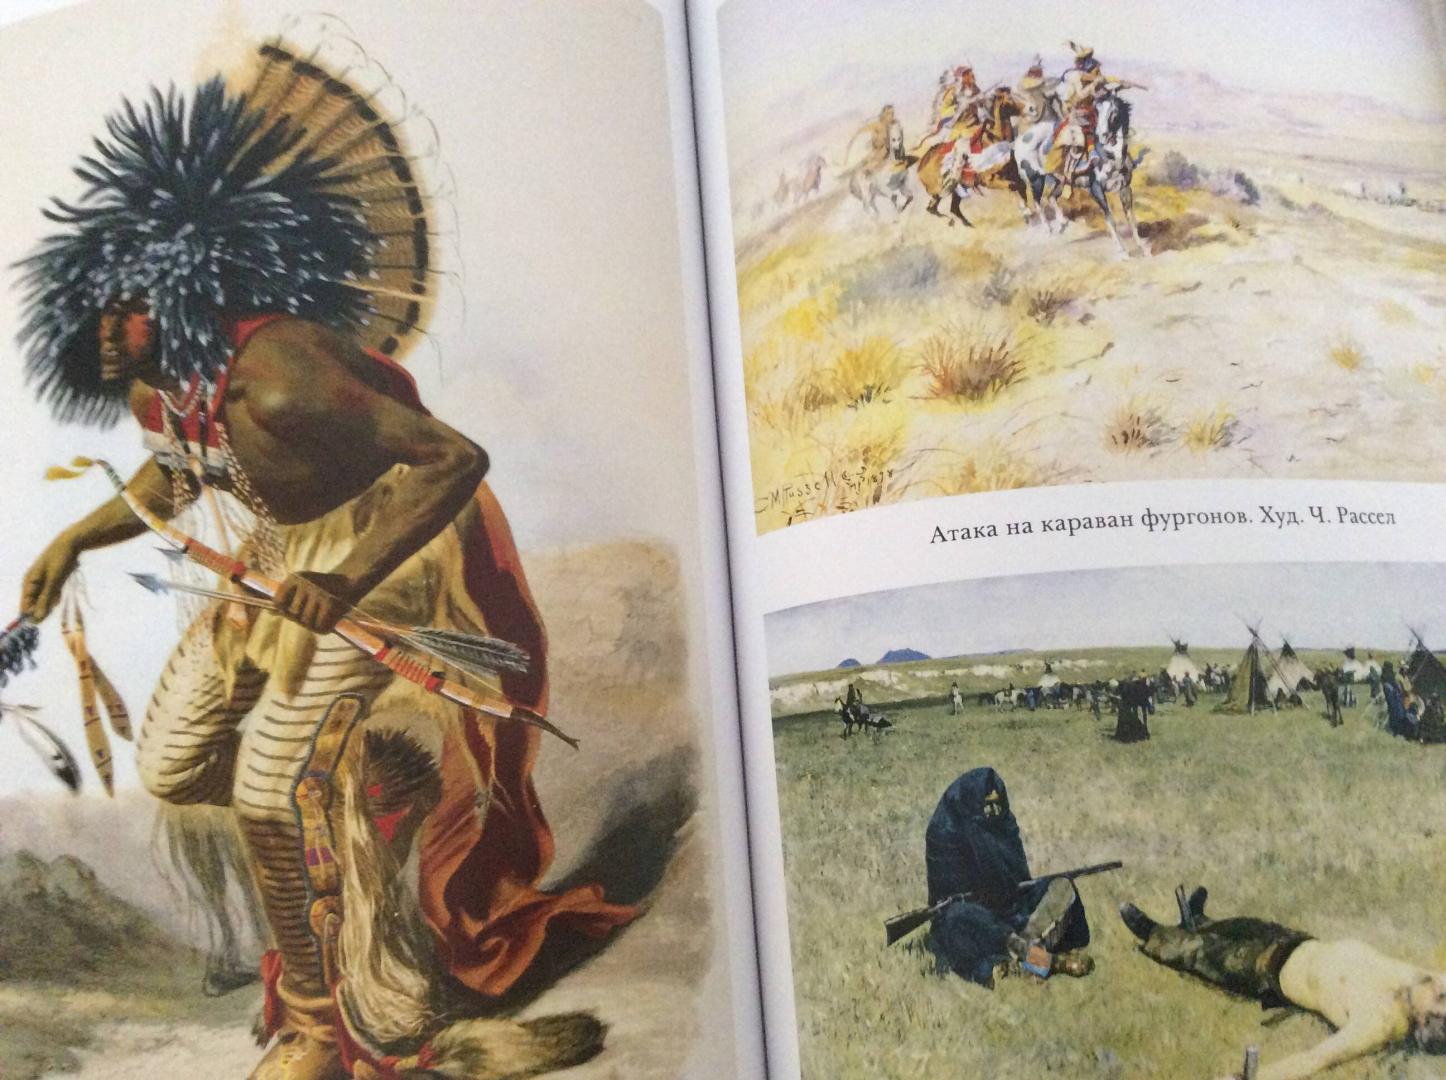 Аудиокнига индейцев. Книги про индейцев. Иллюстрации к книгам про индейцев. Книжка про индейцев. Книги про индейцев Северной Америки.